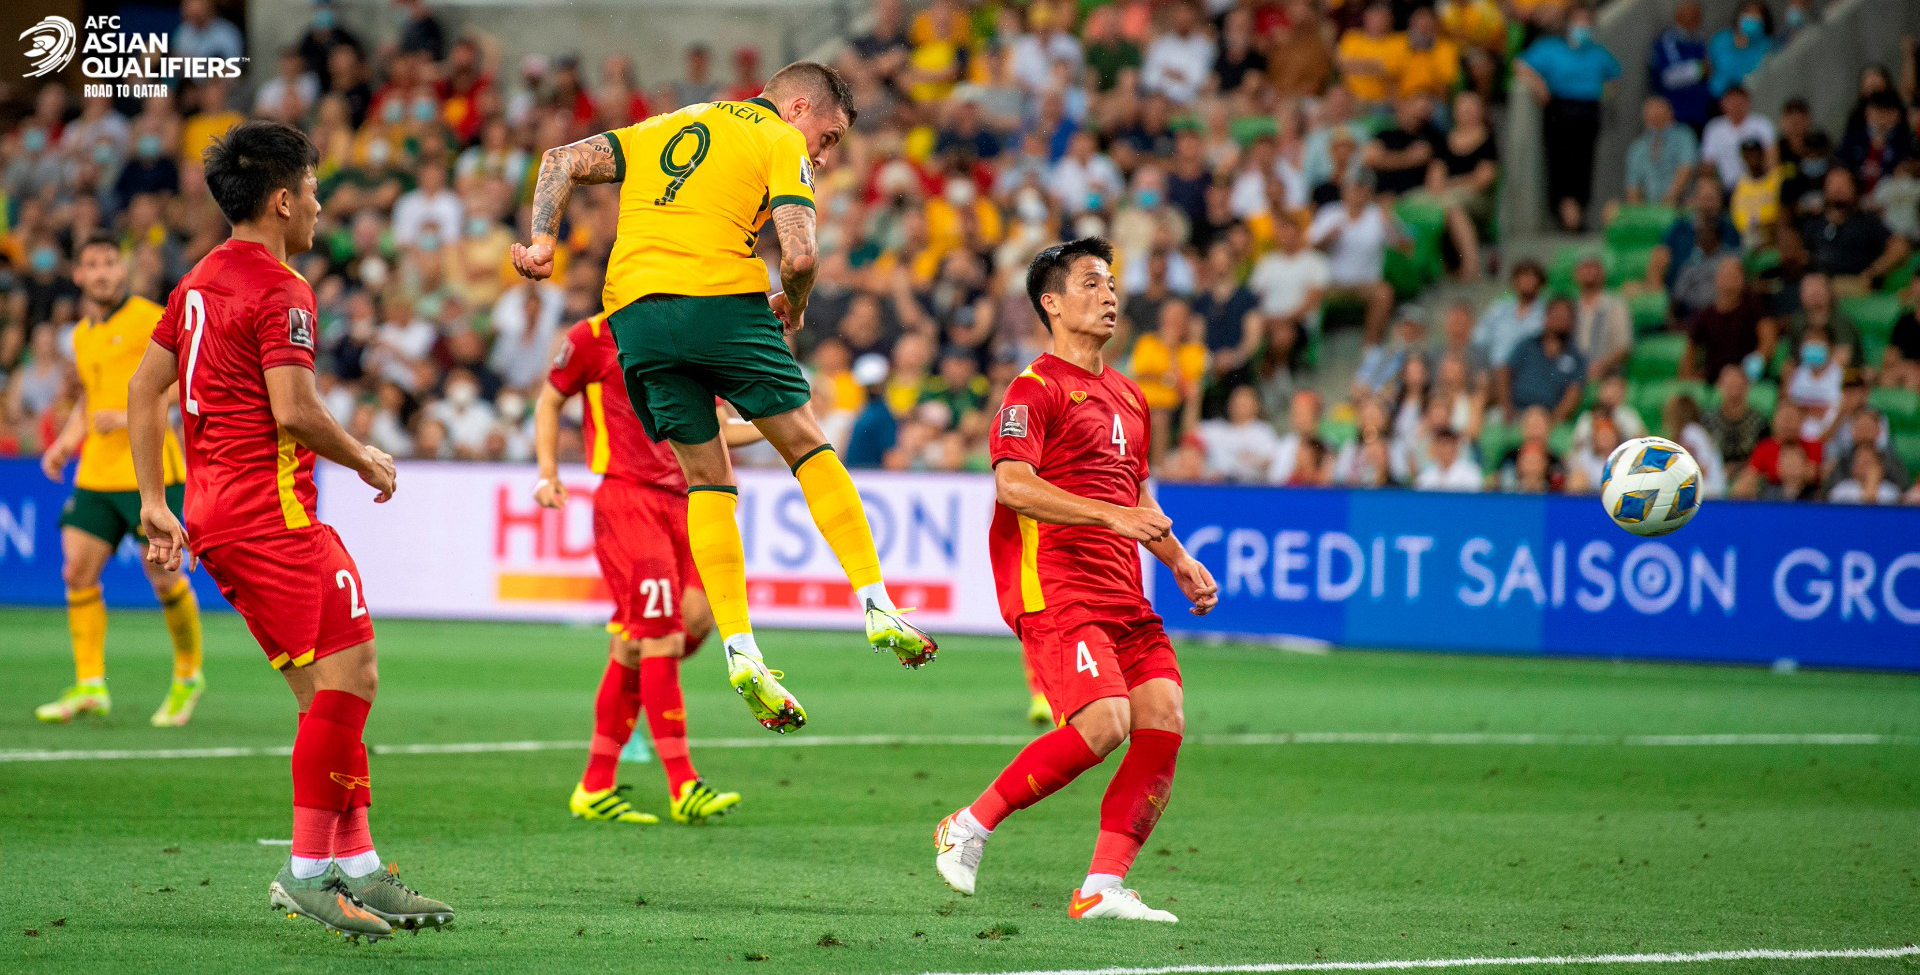 Đội tuyển Việt Nam thua đậm đội tuyển Úc trên sân khách